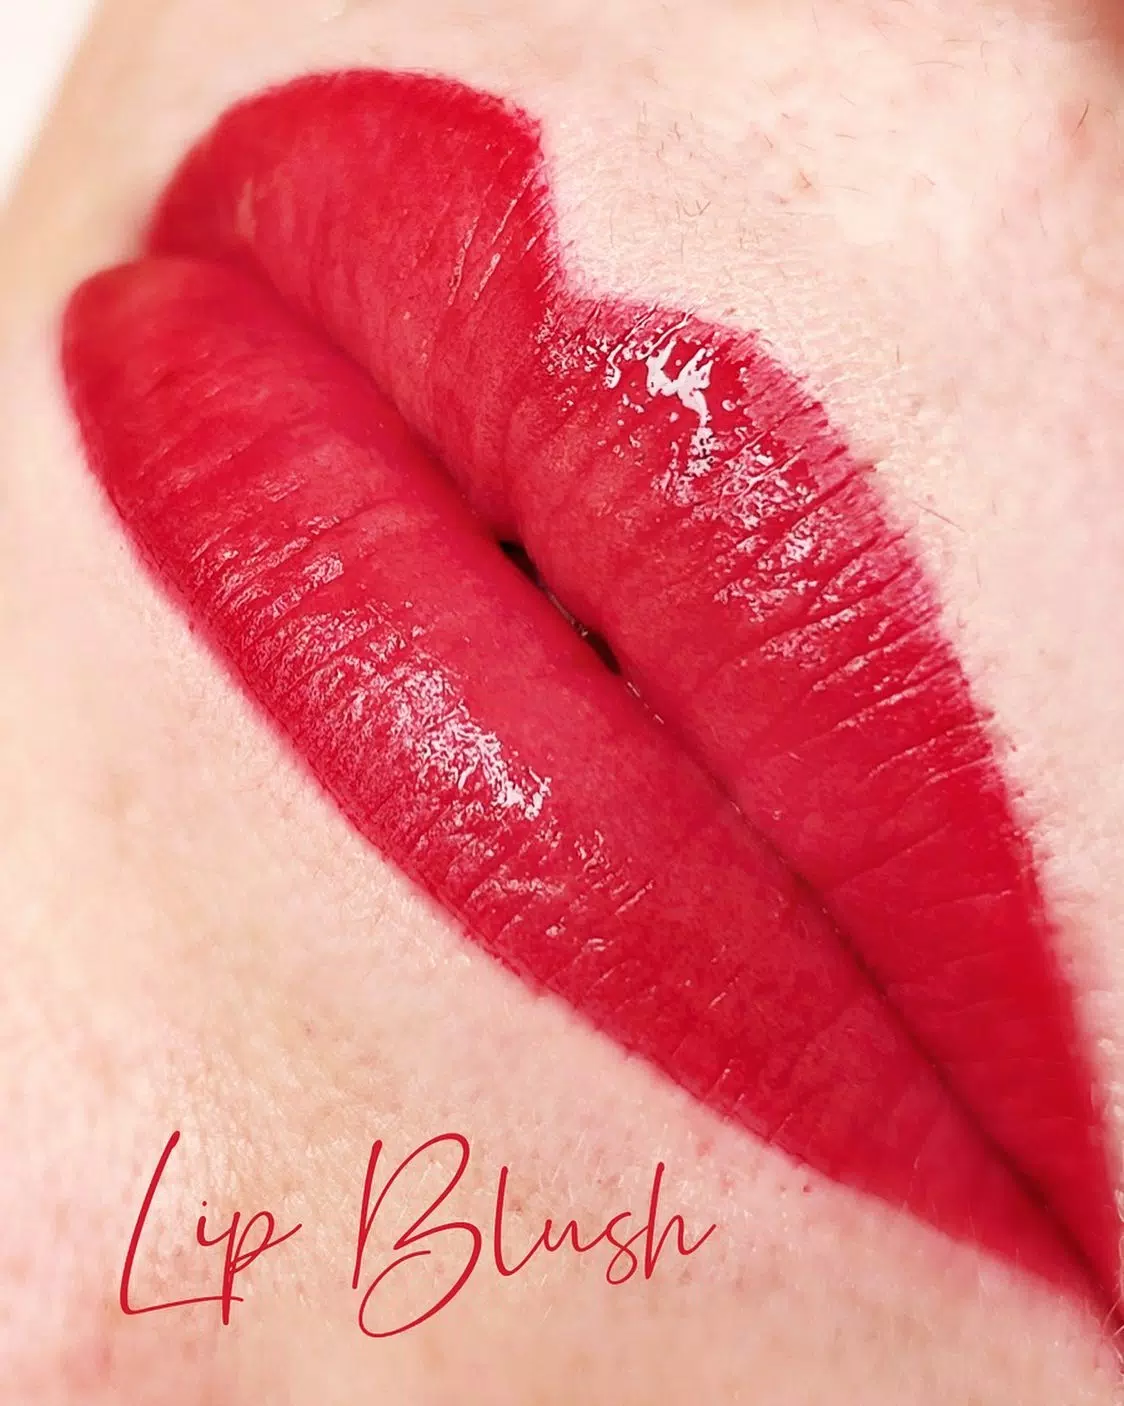 👄🫦👄🫦👄🫦👄🫦
Pmu Lippen 
Eine zarte Schattierung mit Puder Effekt 
#pmu #lippen #lips #blush #permanentmakeup #nomakeup #justpmu 💋